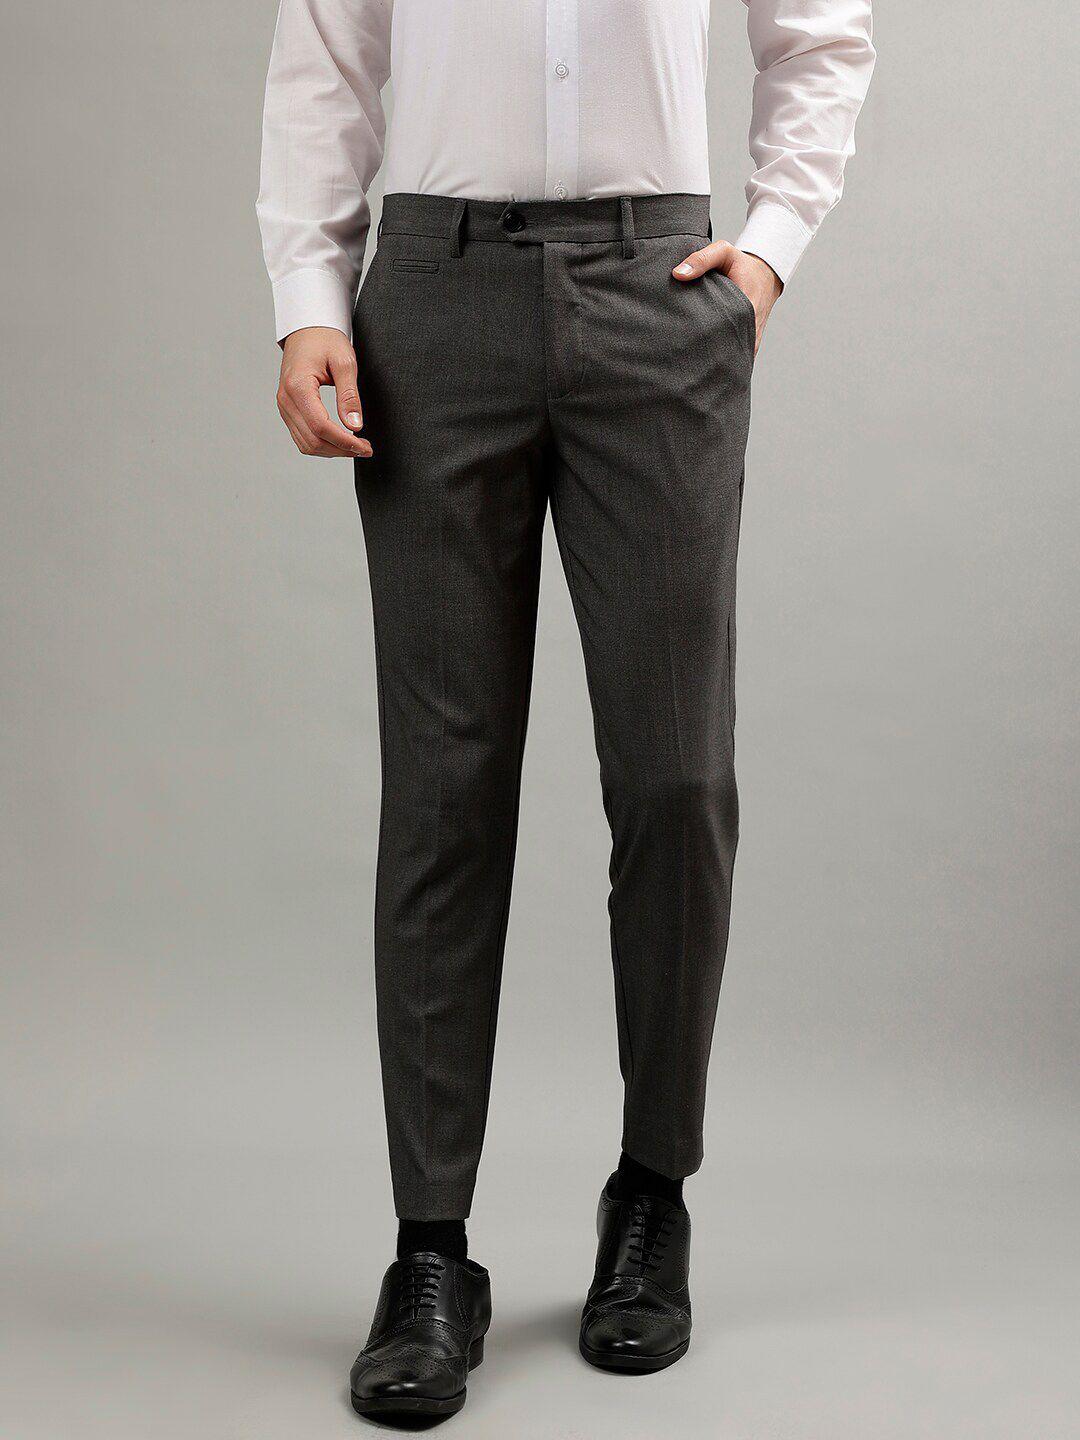 lindbergh-men-slim-fit-formal-trouser